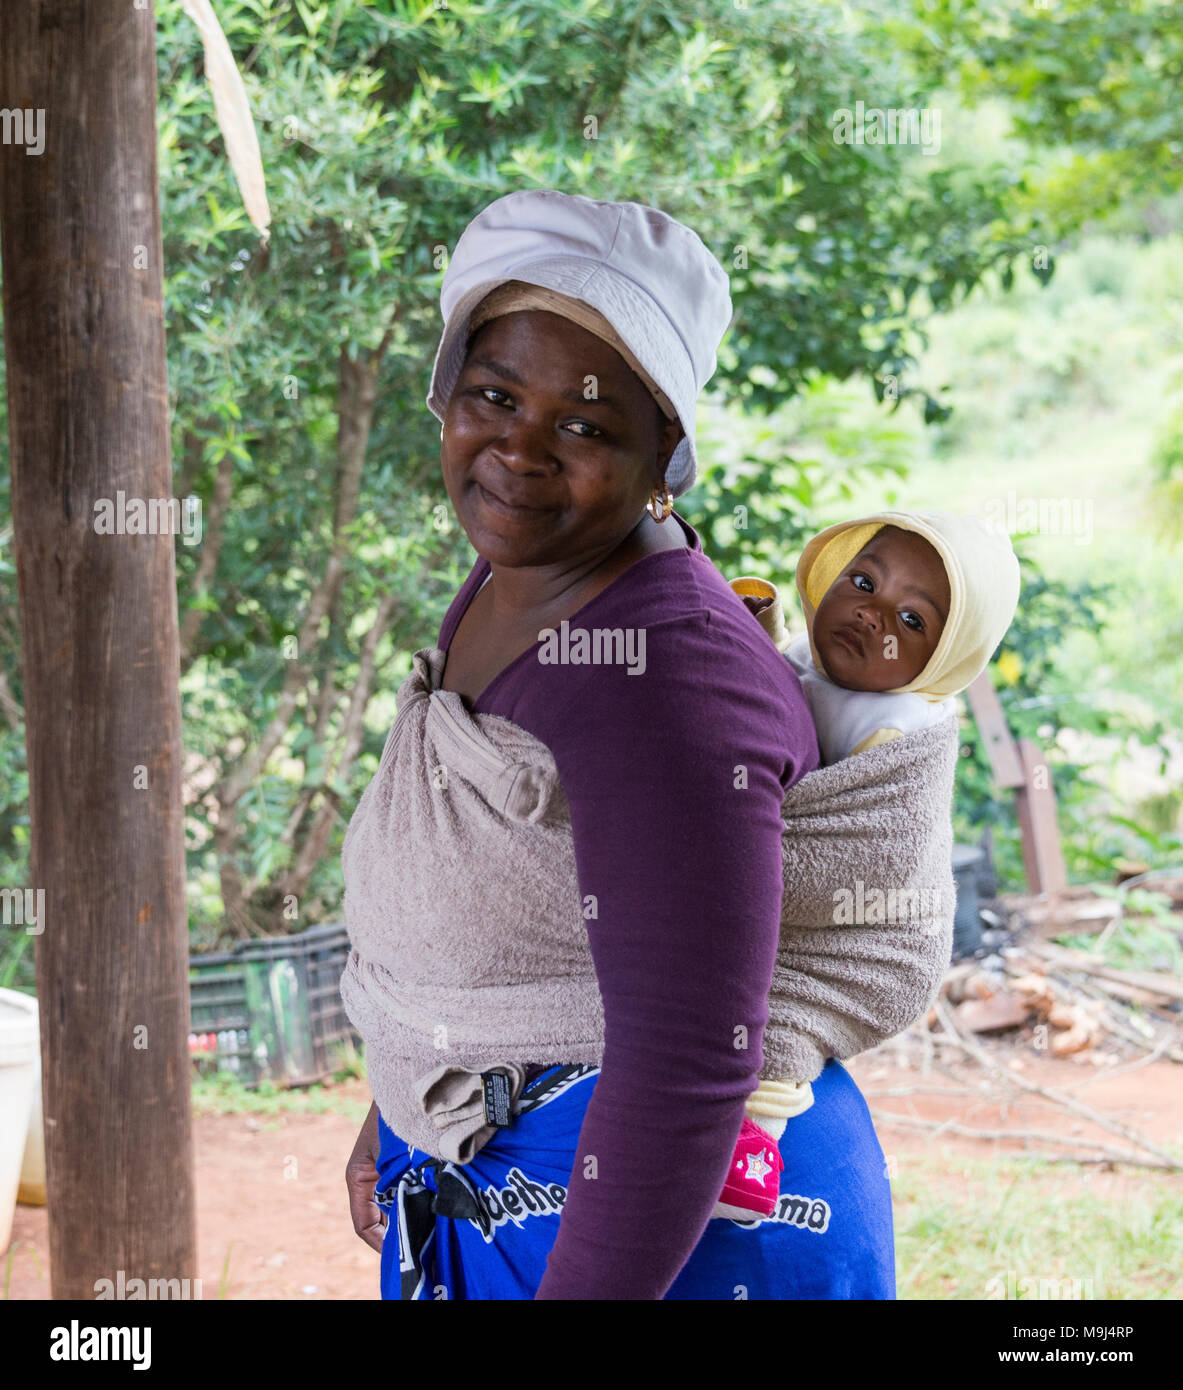 Afrikanische Frau mit Baby im Tragetuch, in Afrika ist für Frau normal ist  ihr Baby im Tragetuch zu Carrie, zu arbeiten, oder bei shoppingg  Stockfotografie - Alamy